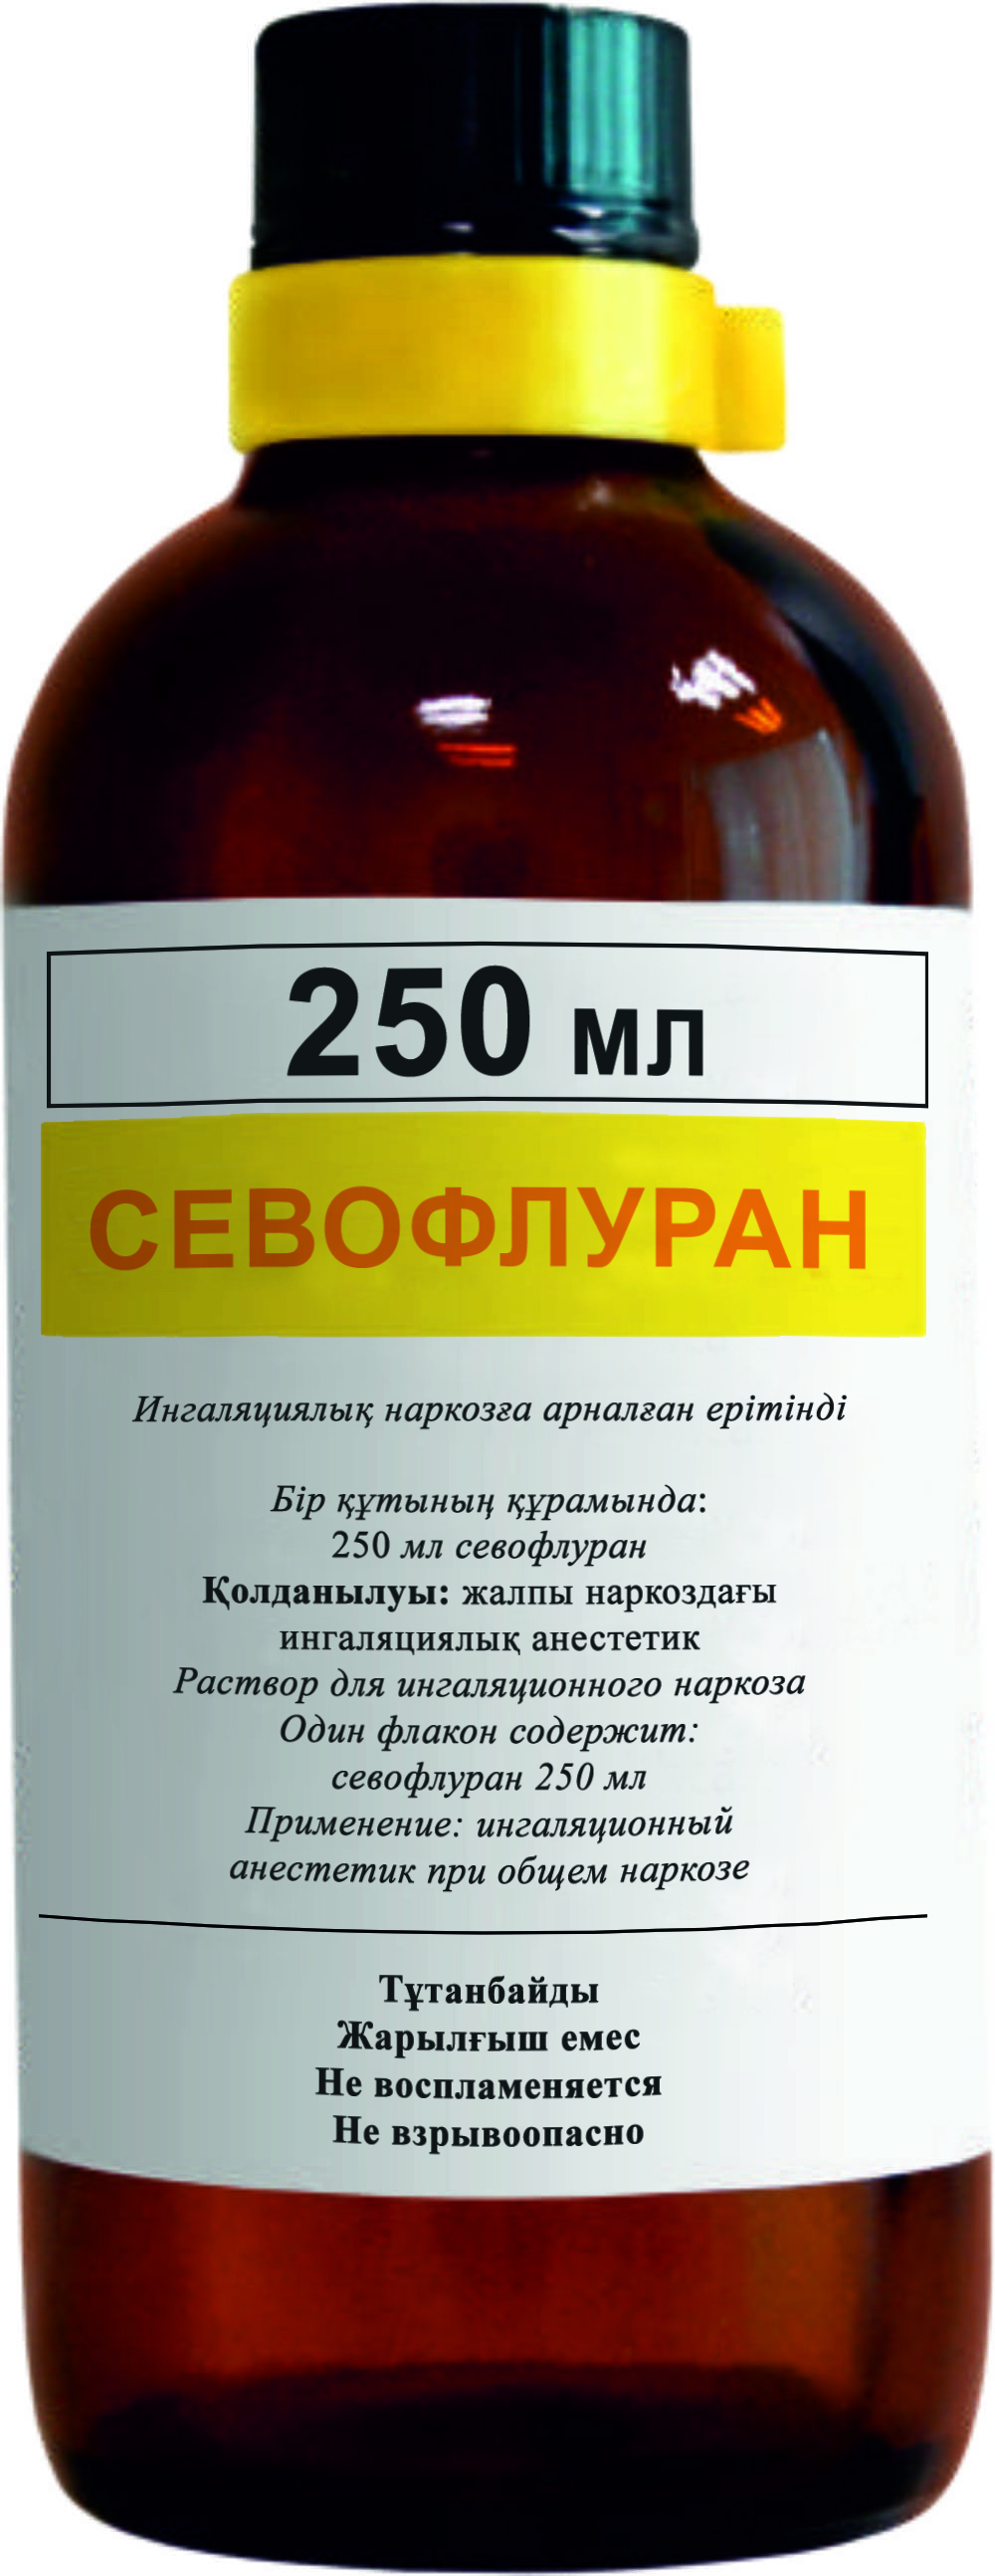 Севофлуран (Севофлуран) - Анестетики - Pharma